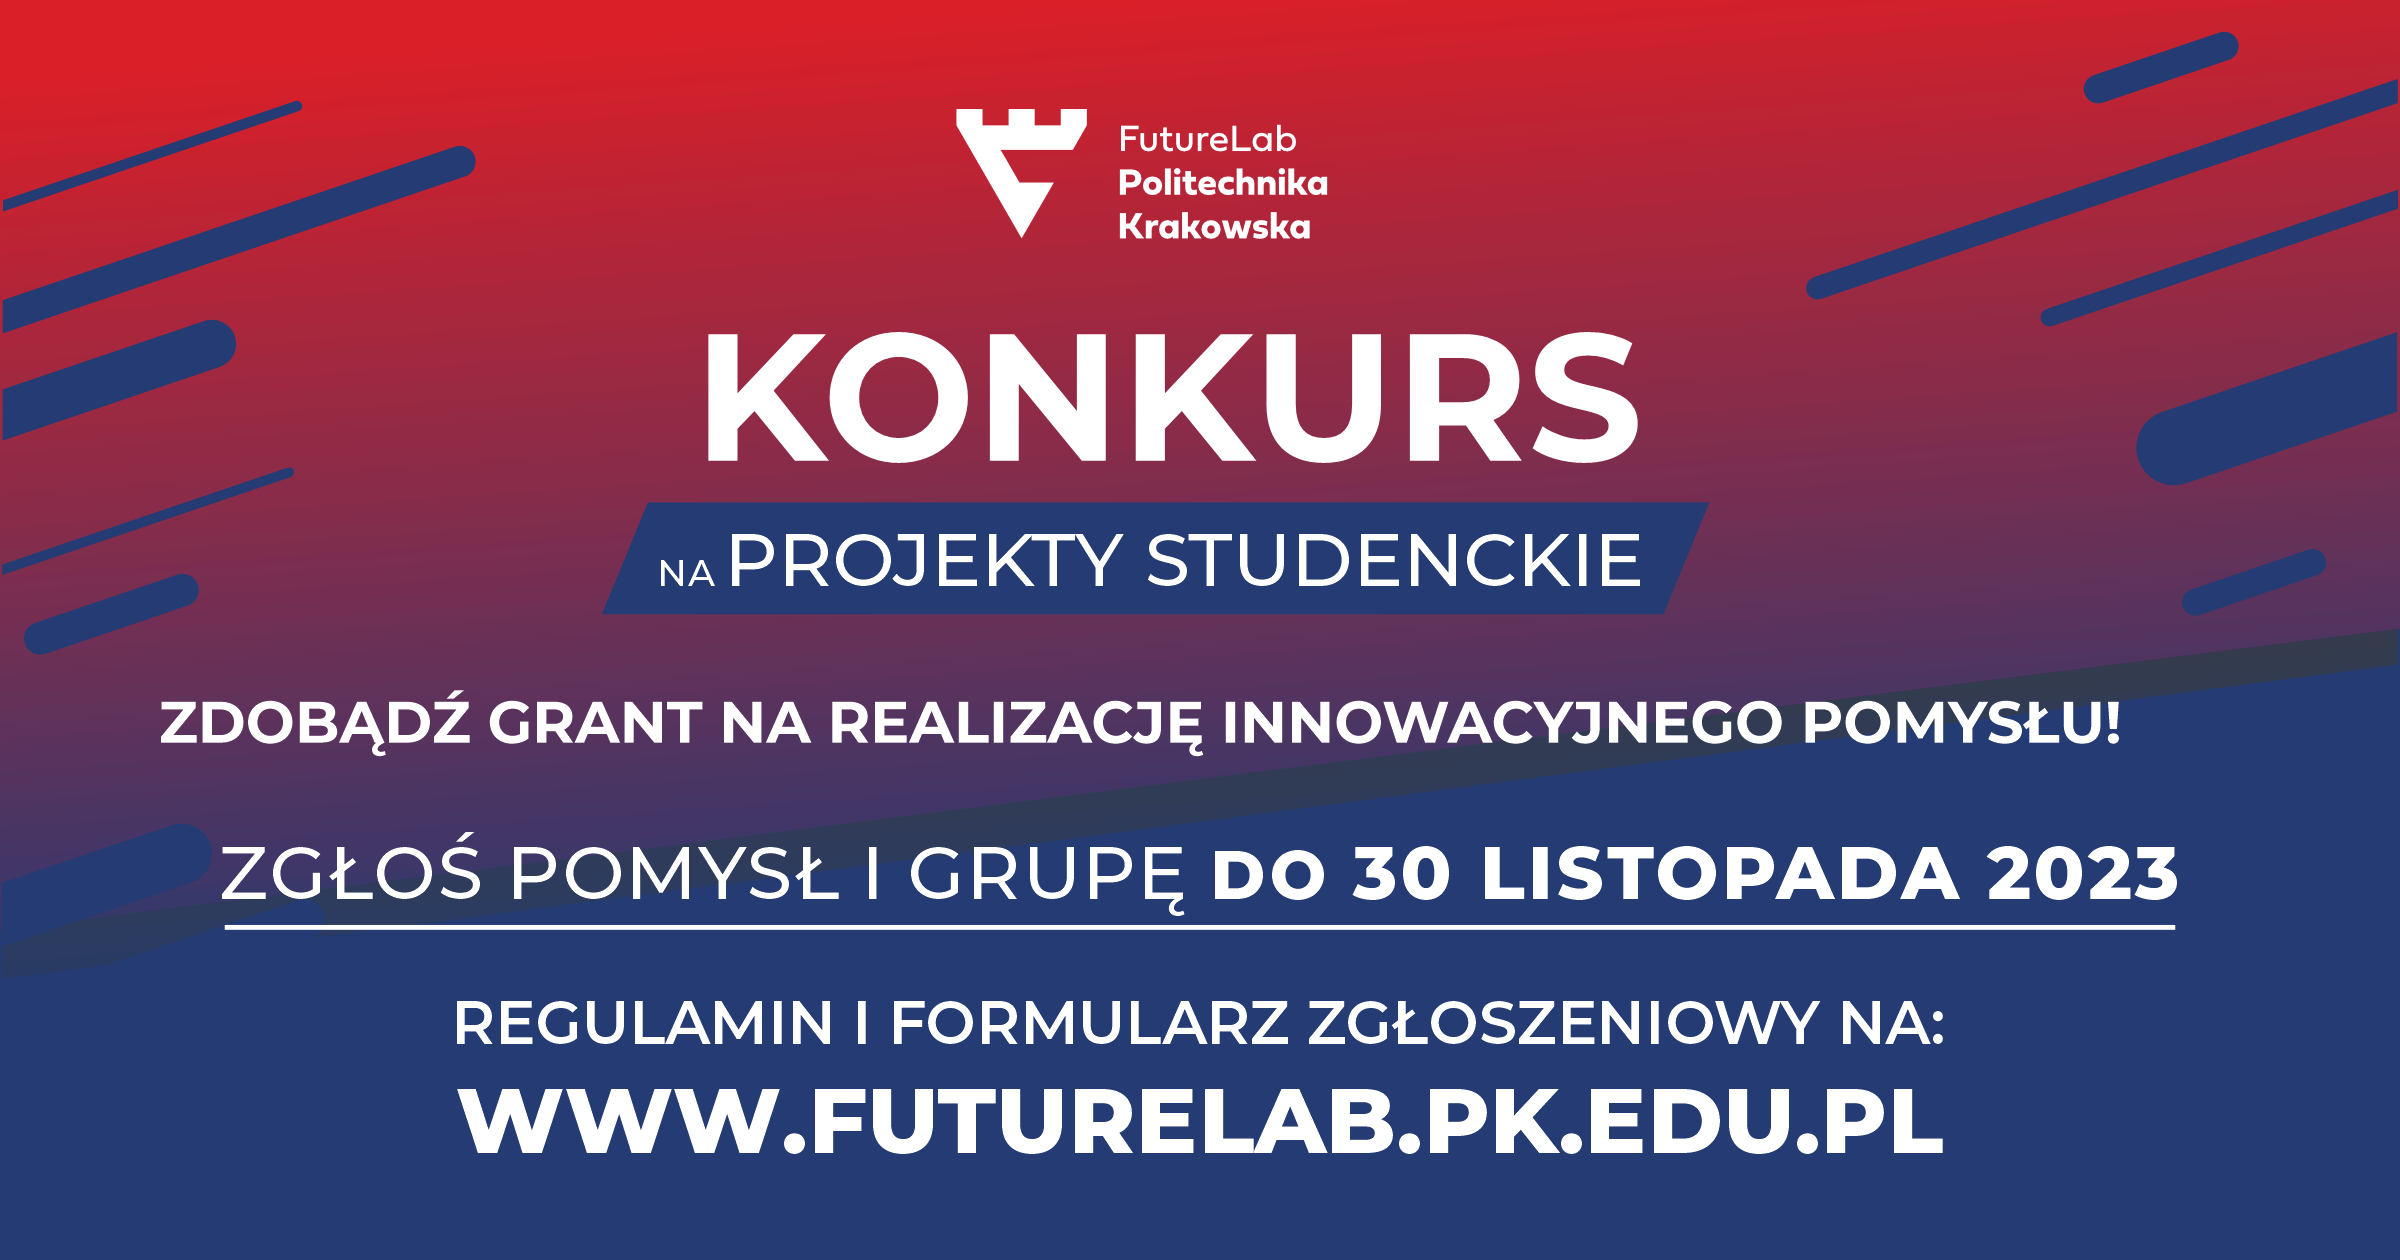 Konkurs na projekty studenckie. Zdobądż grant na realizację innowacyjnego pomysłu. Złoś pomysł i grupę do 30 listopada 2023. Regulamin i formularz zgłoszeniowy: www.futurelab.pk.edu.pl